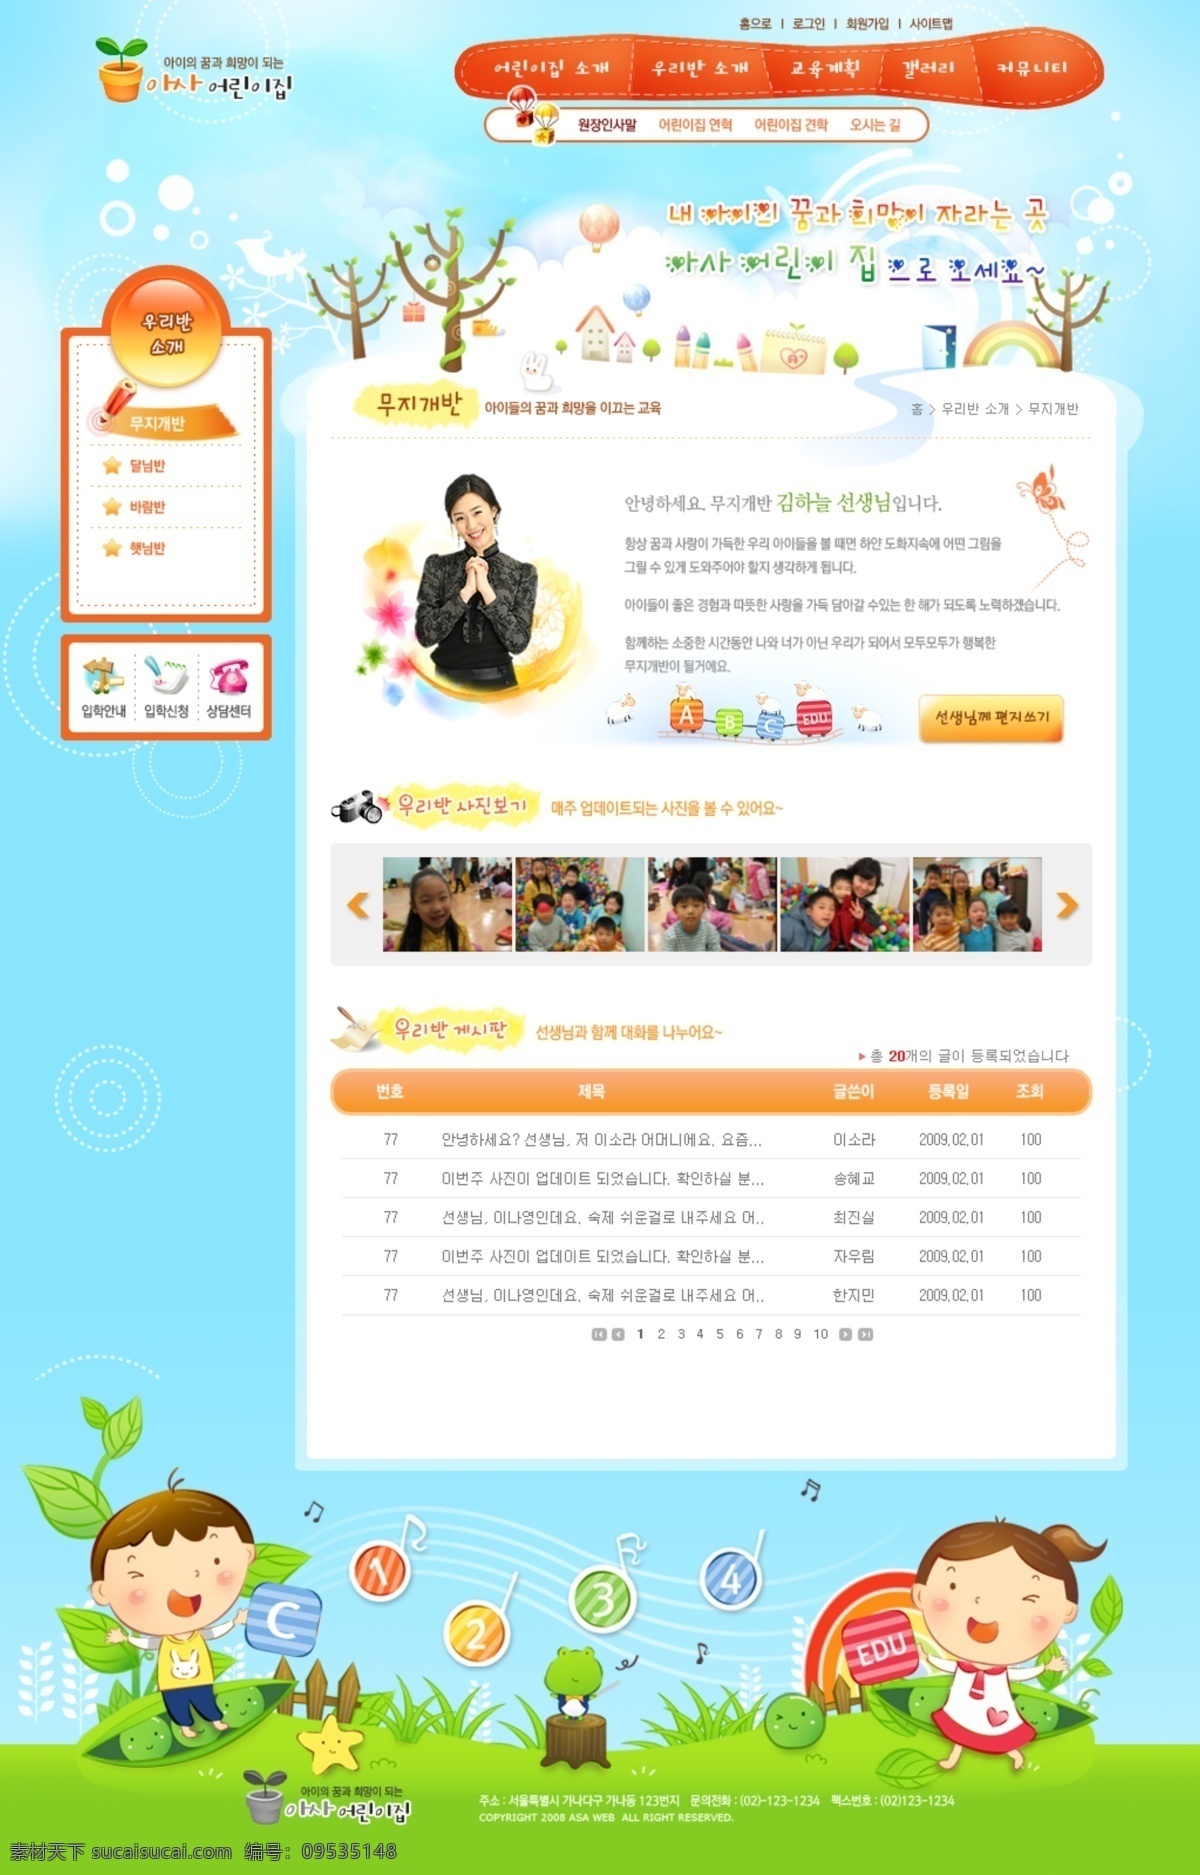 韩国模板 韩国网页 教育 卡通儿童 卡通男孩 卡通女孩 托儿所 网页 幼儿园 网页模板 幼儿园网页 小朋友 小孩子 小男孩 小女孩 主页 网页主页 网页设计大师 源文件 网页素材